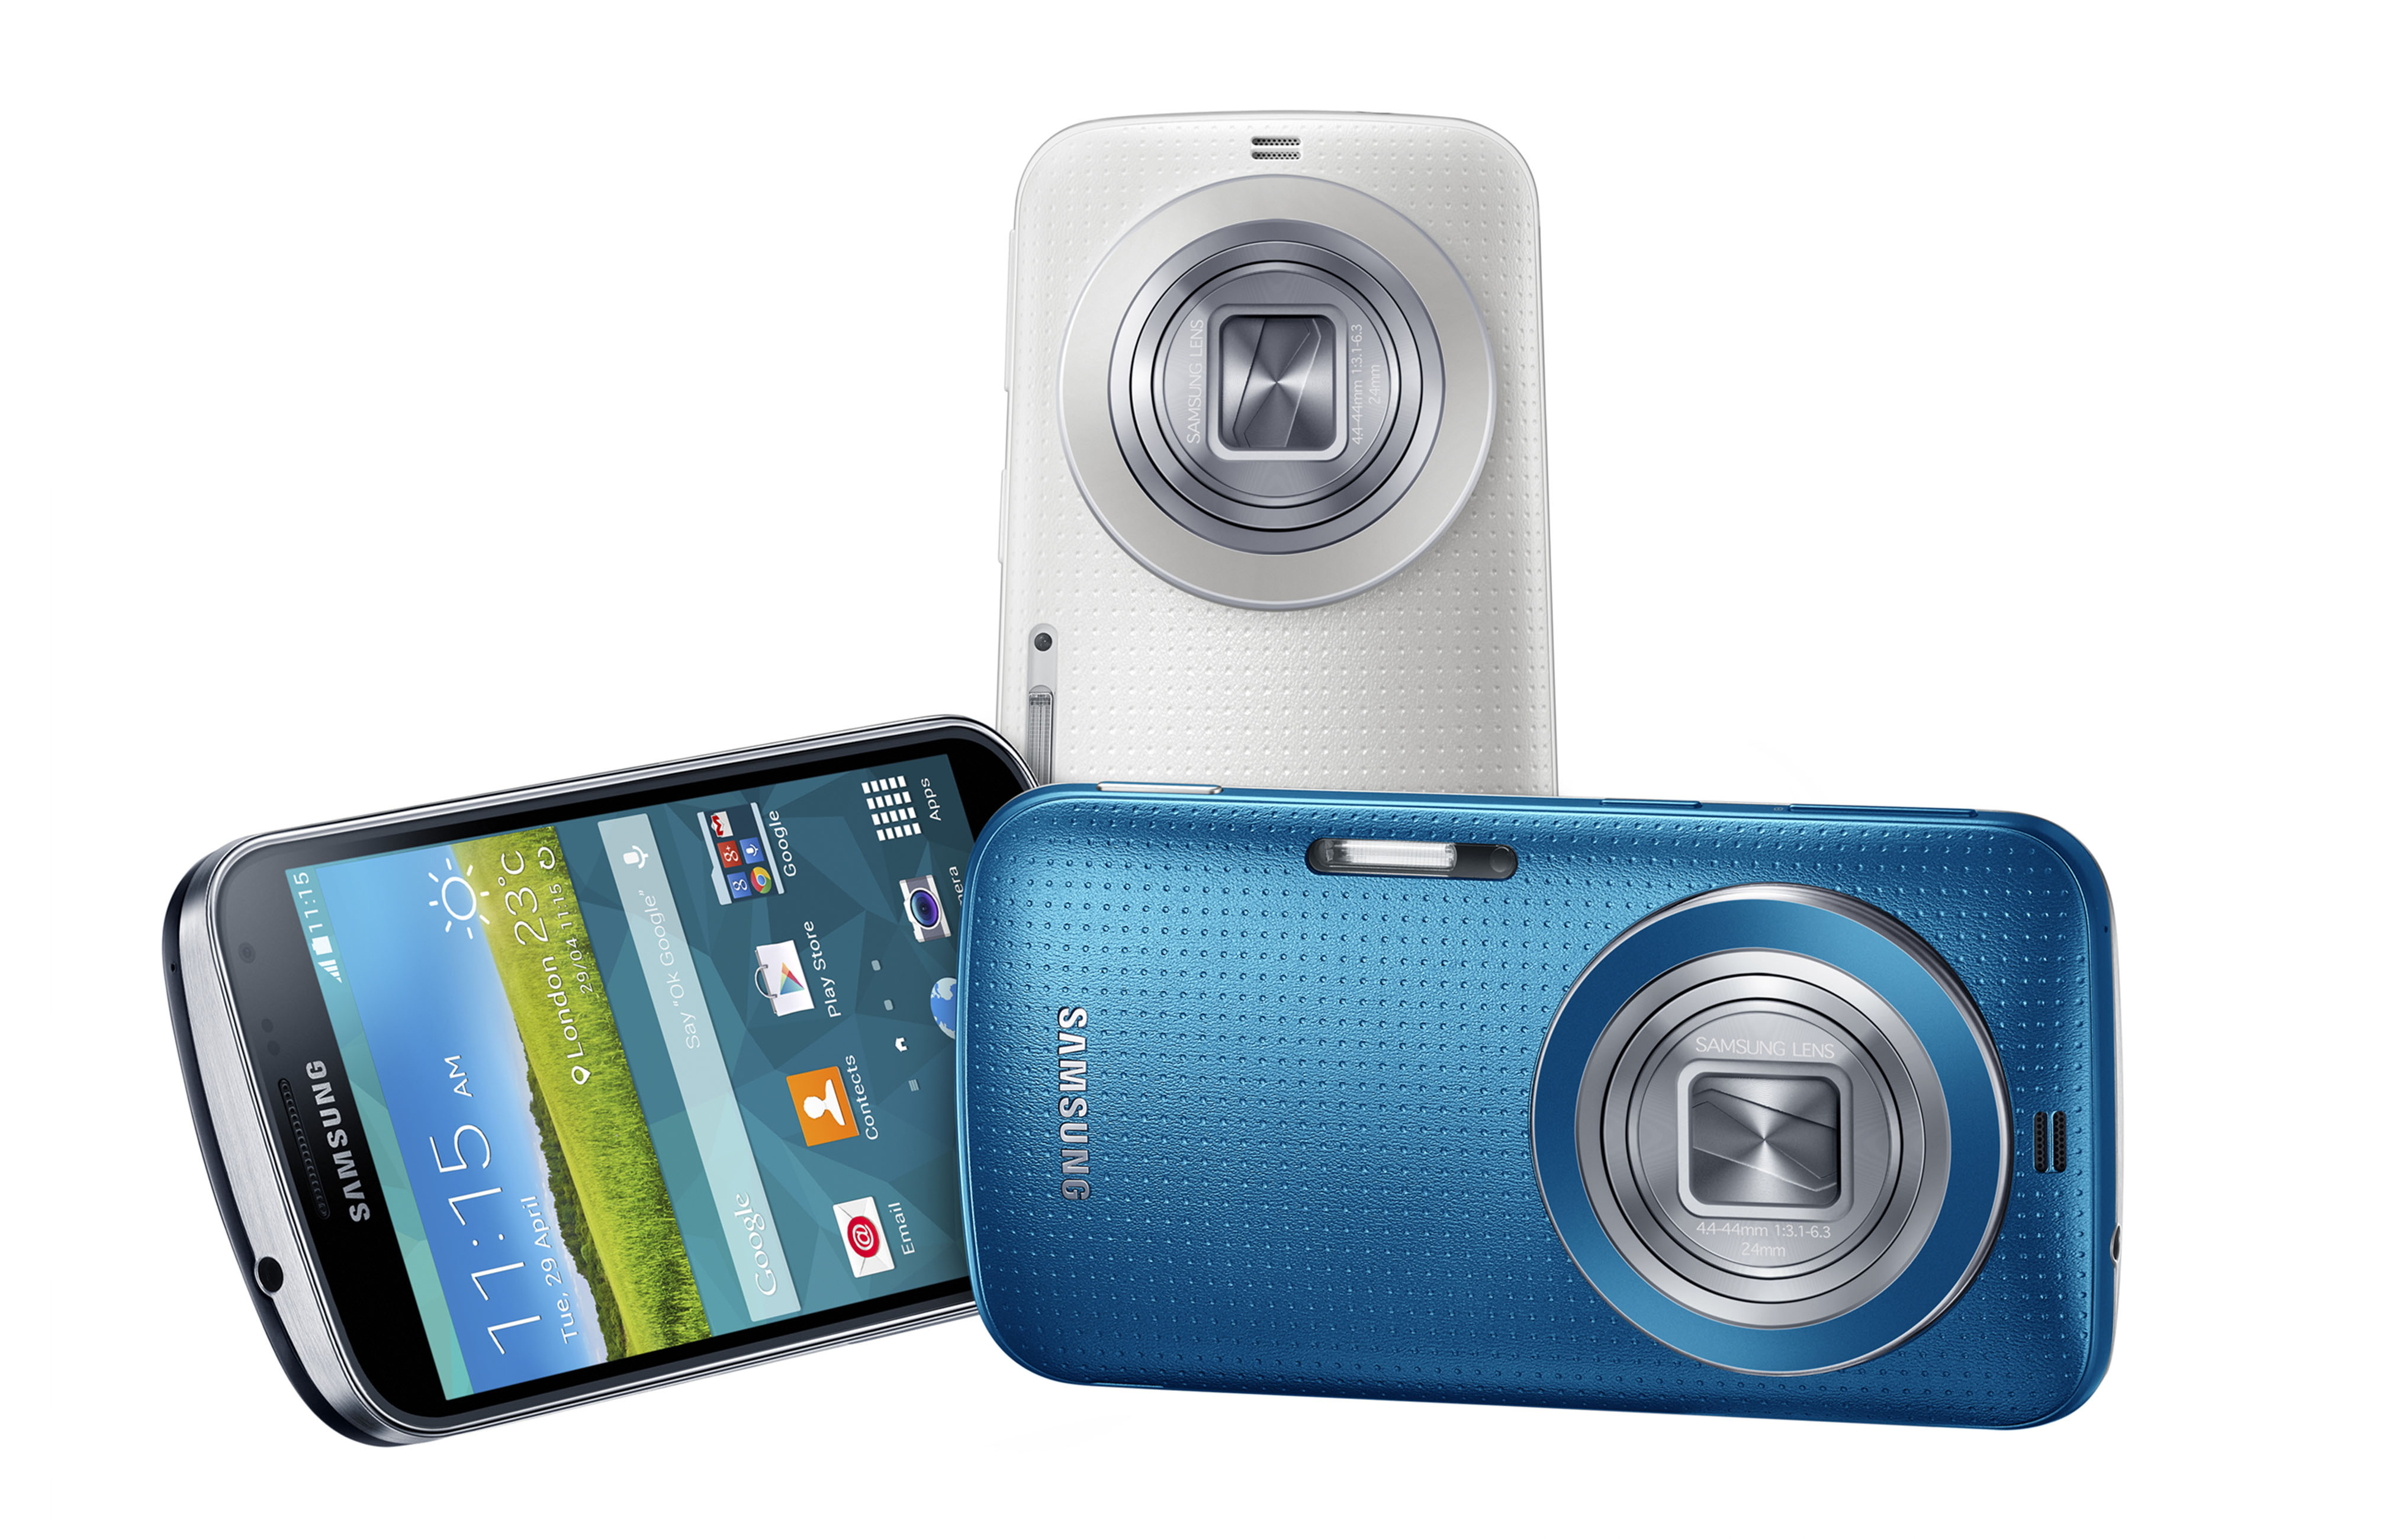 Samsung revela Galaxy K zoom: 20,7 megapixels, zoom óptico de 10x e ligações telefônicas